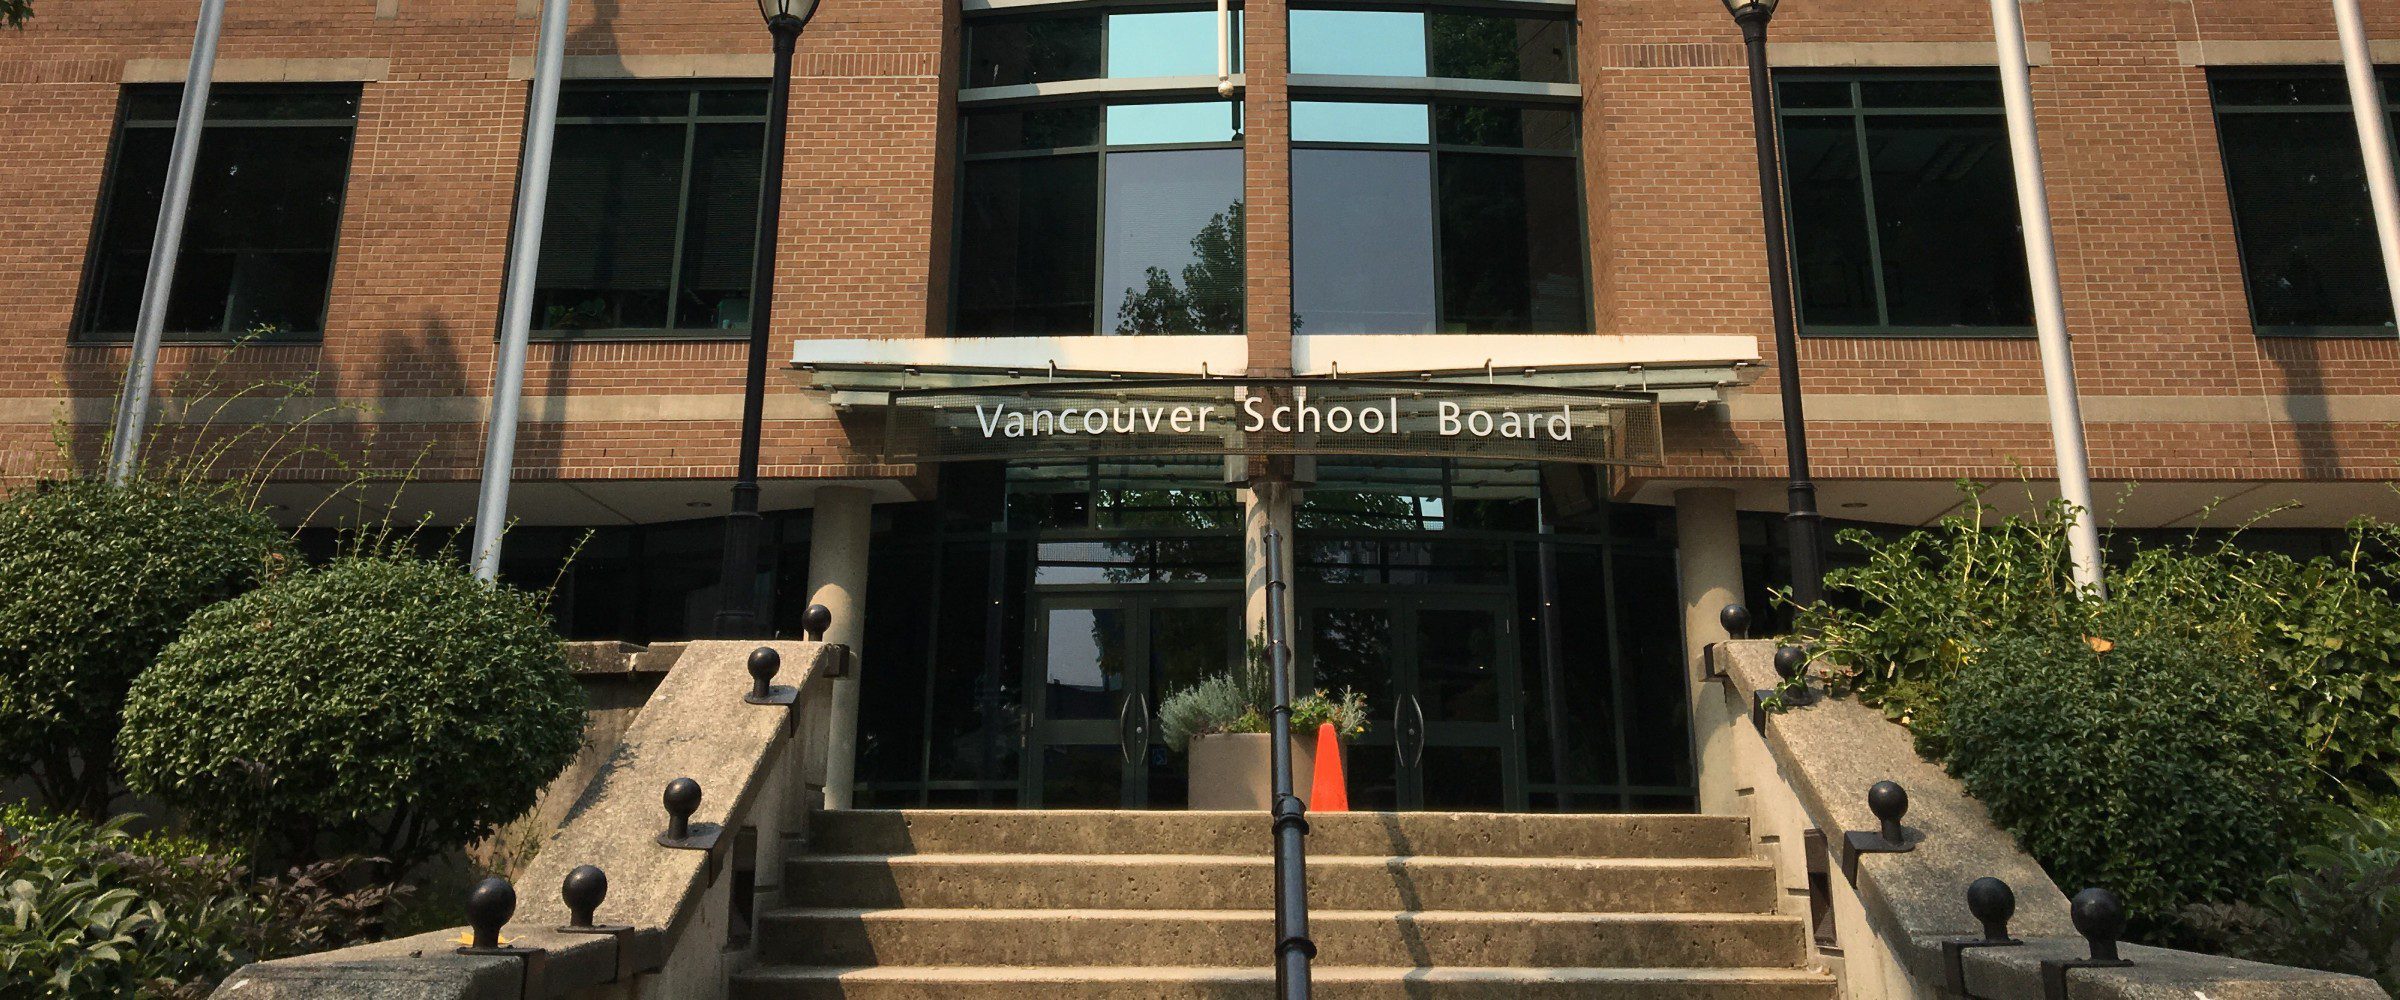 Vancouver School Board building